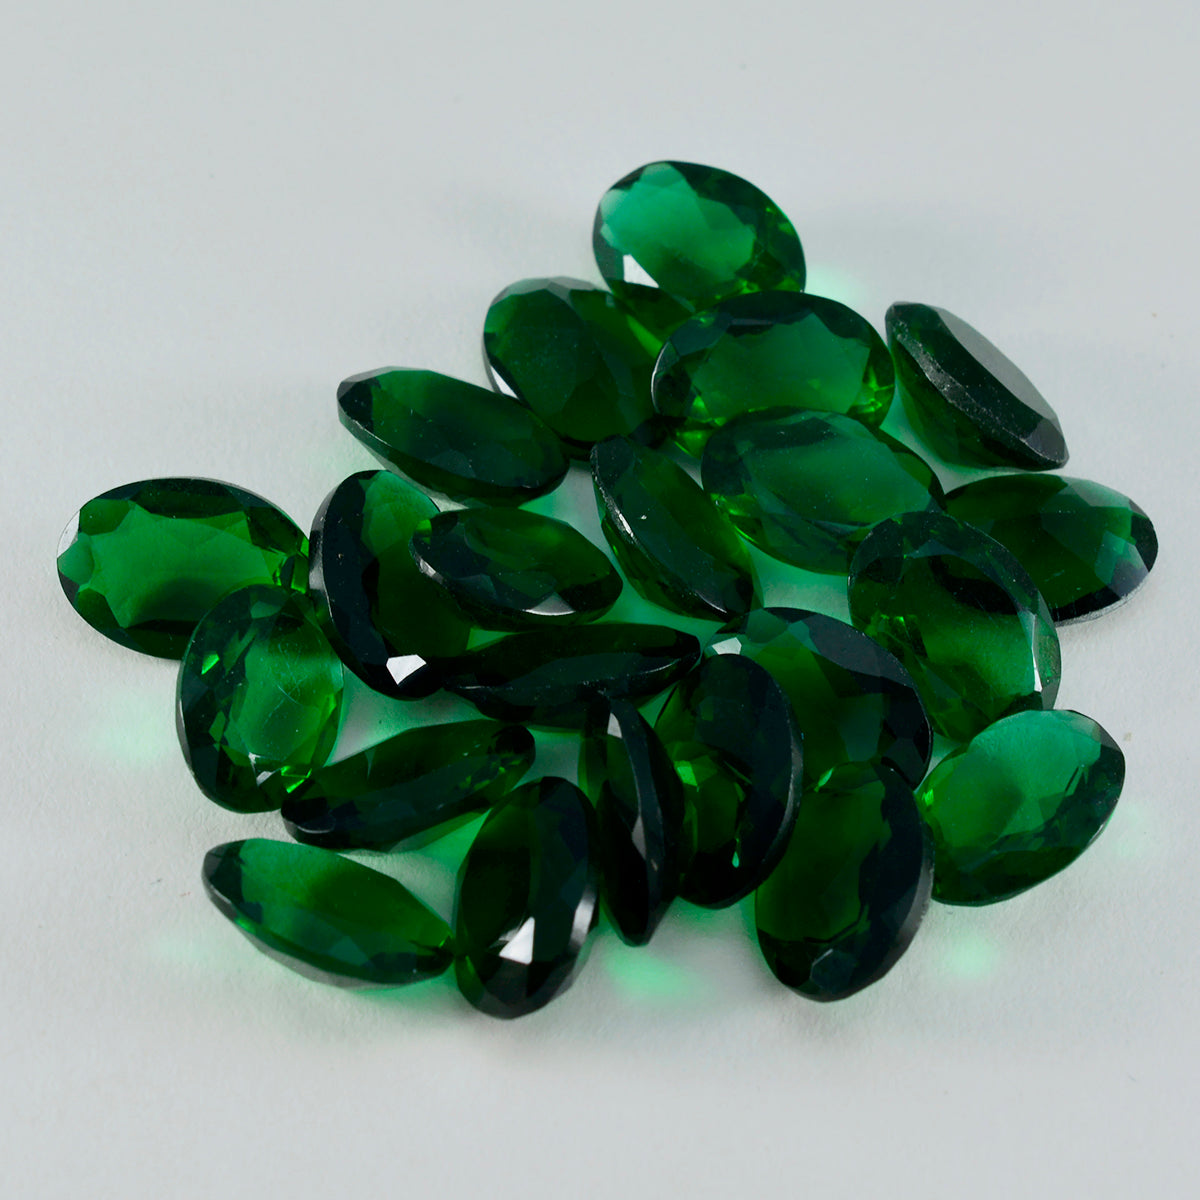 Riyogems 1 pieza Esmeralda verde CZ facetada 9x11mm forma ovalada piedra de calidad bonita